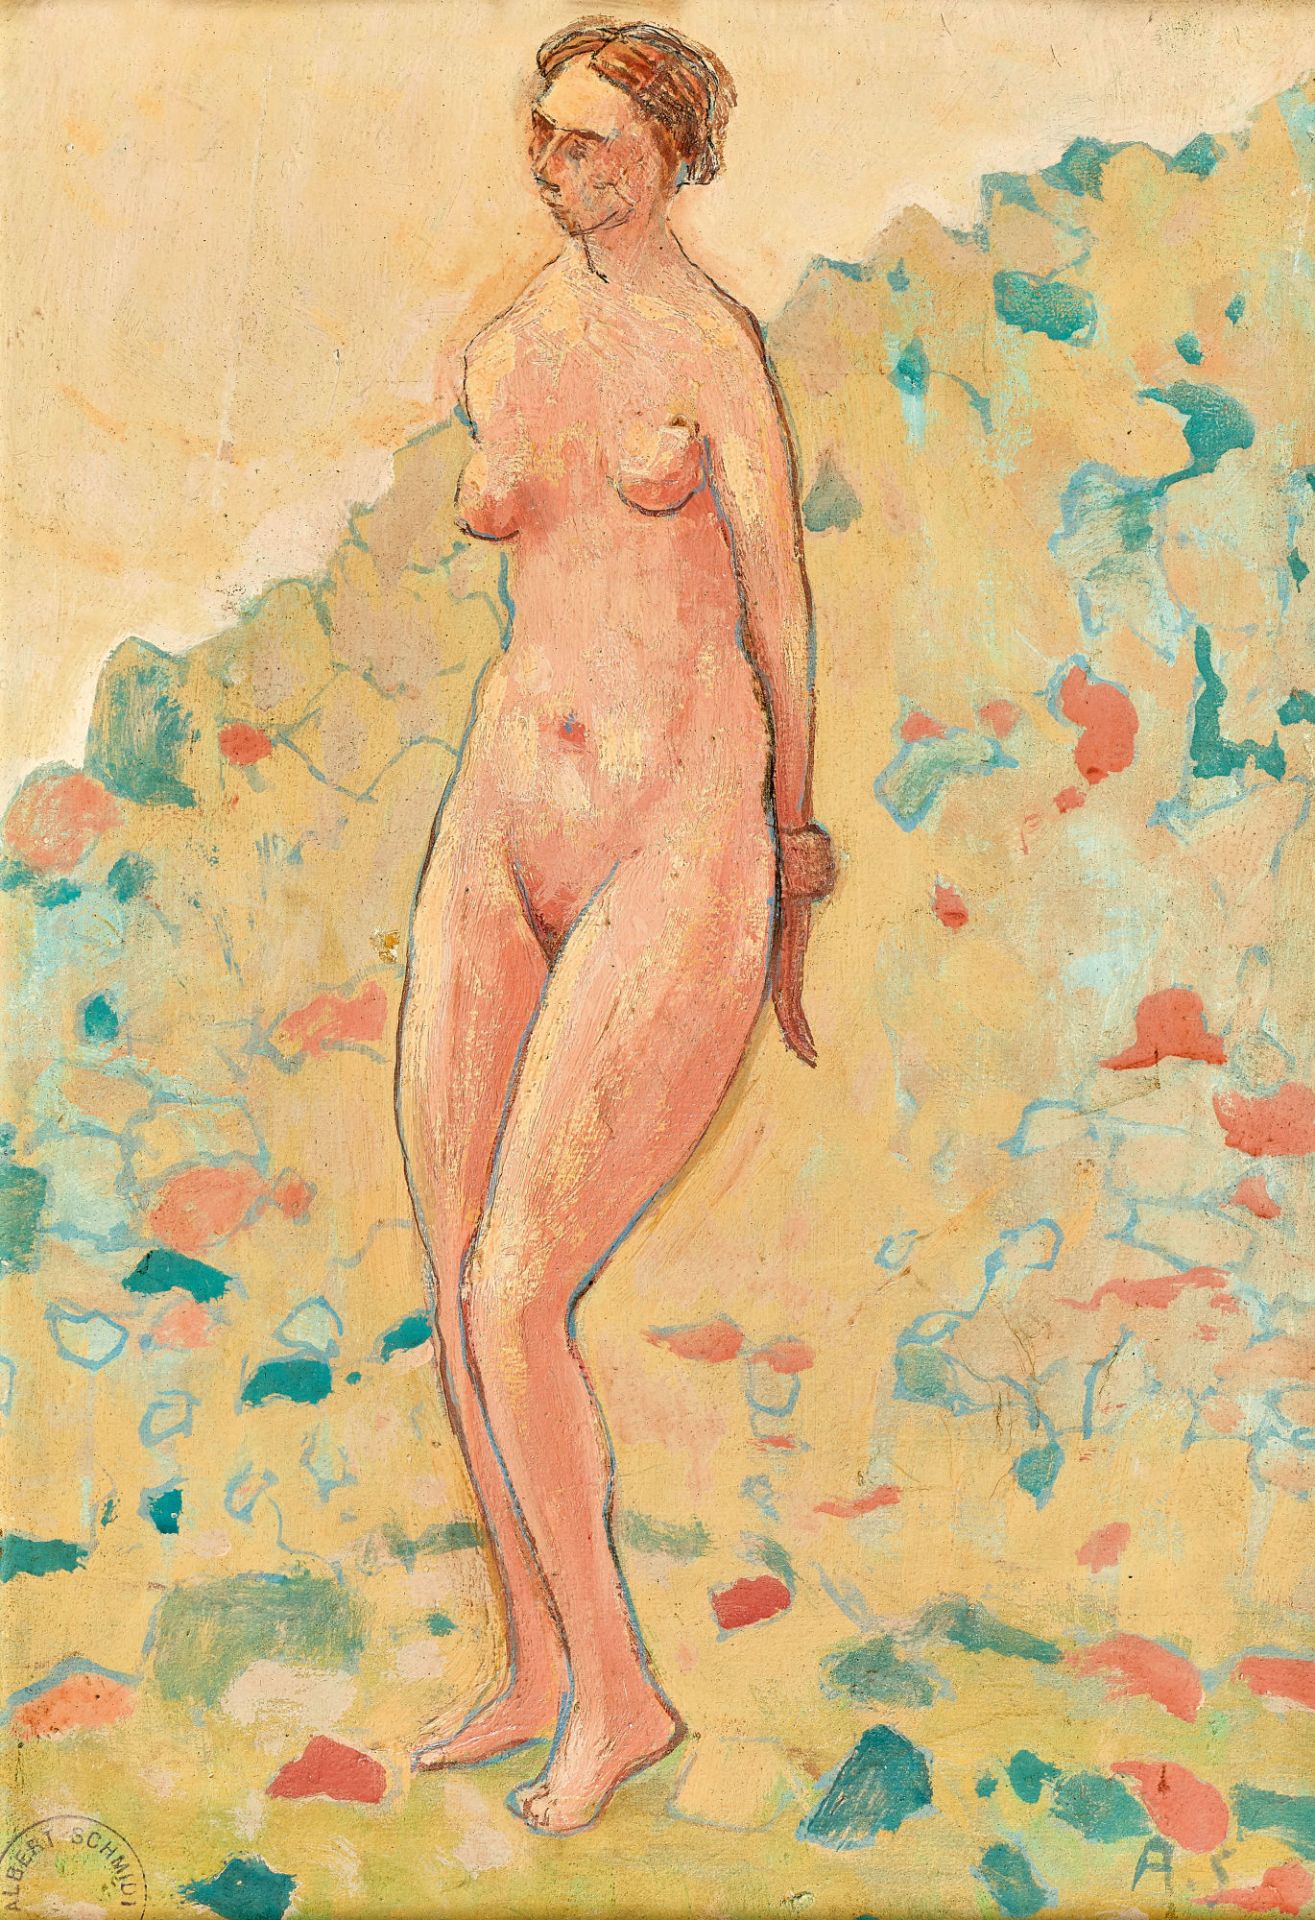 SCHMIDT, ALBERT: Femme nue dans un paysage.